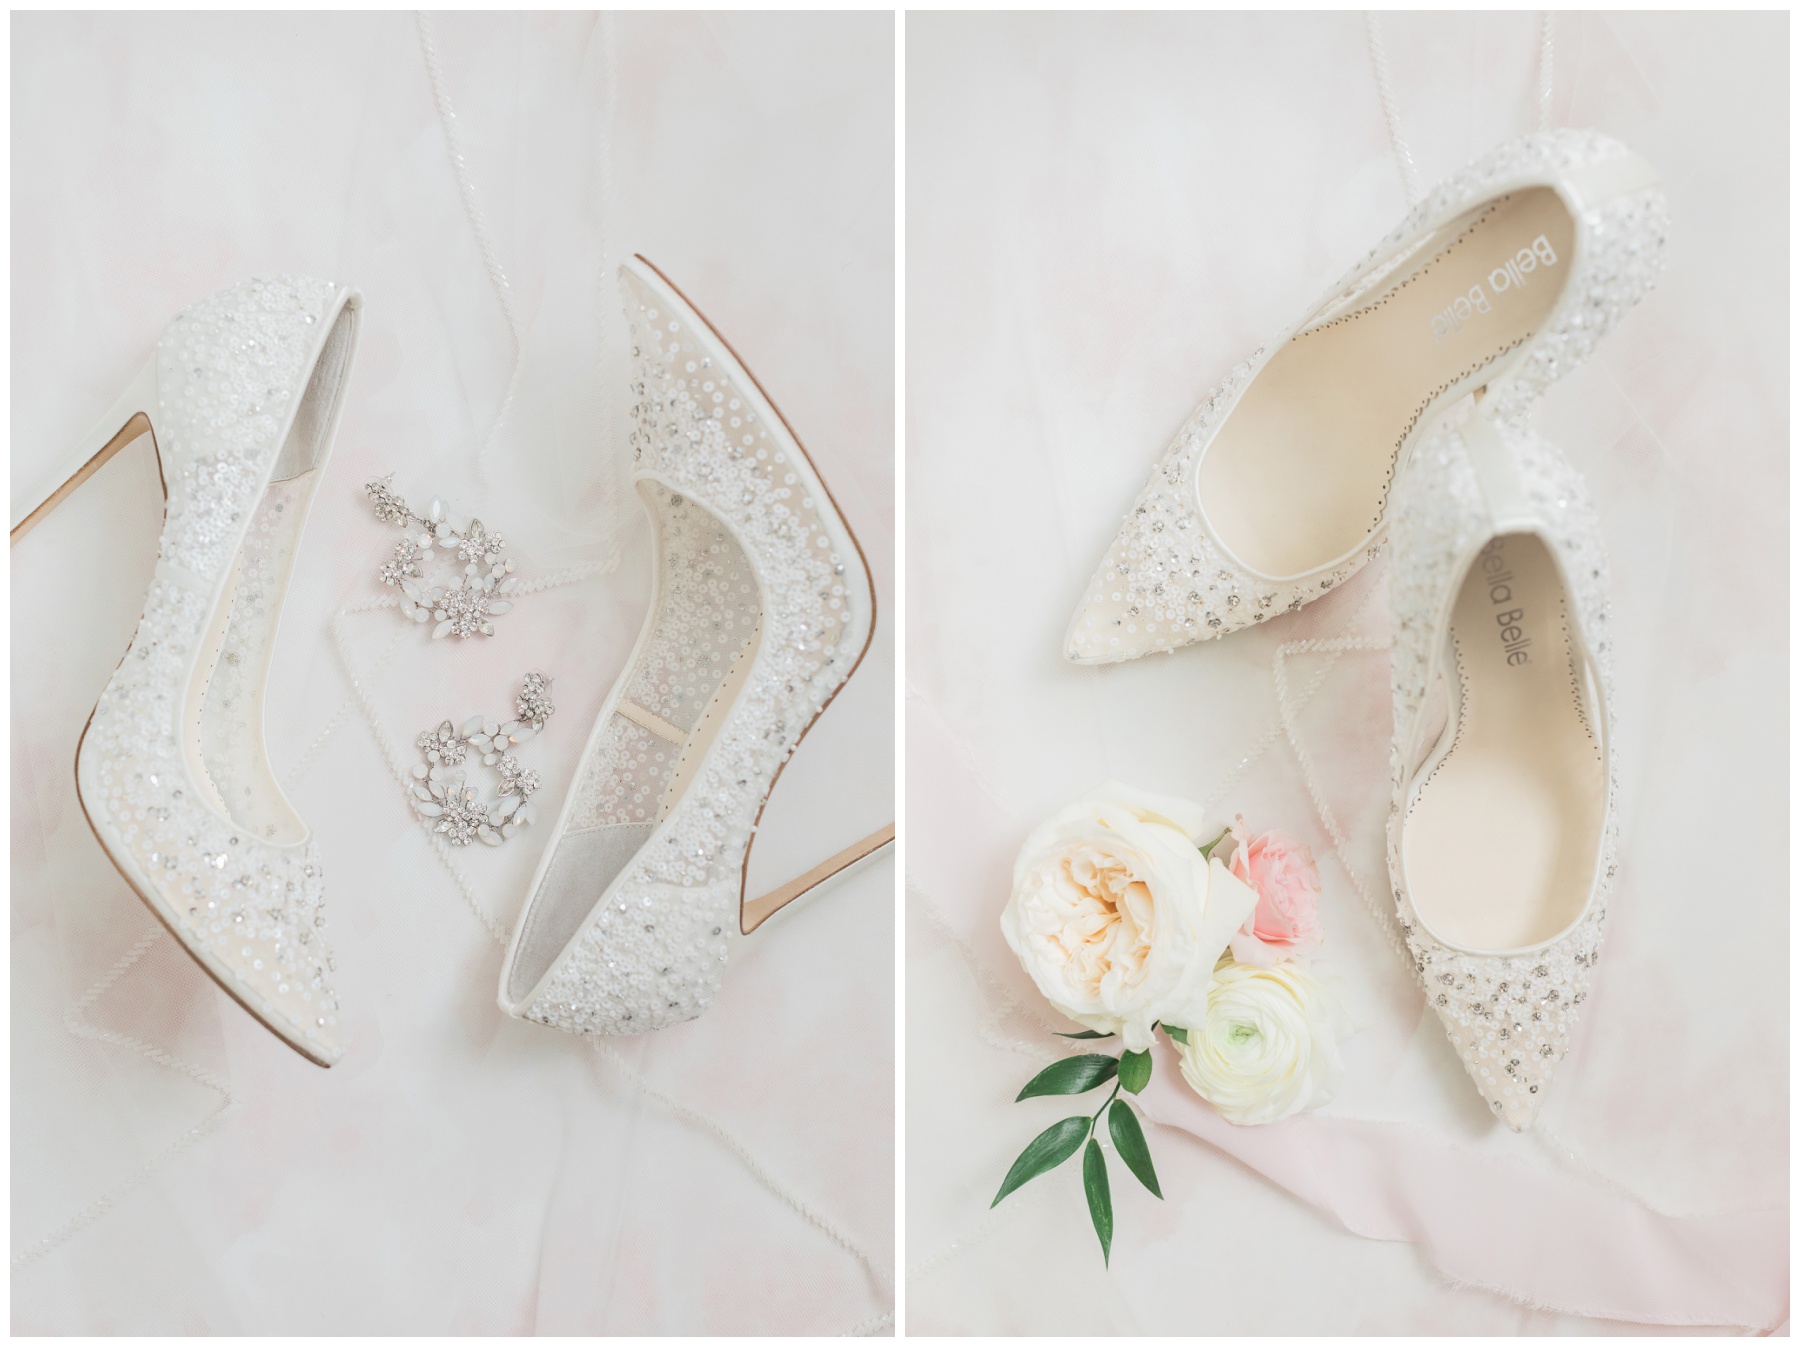 Rhinestone heels by Bella Belle Shoes